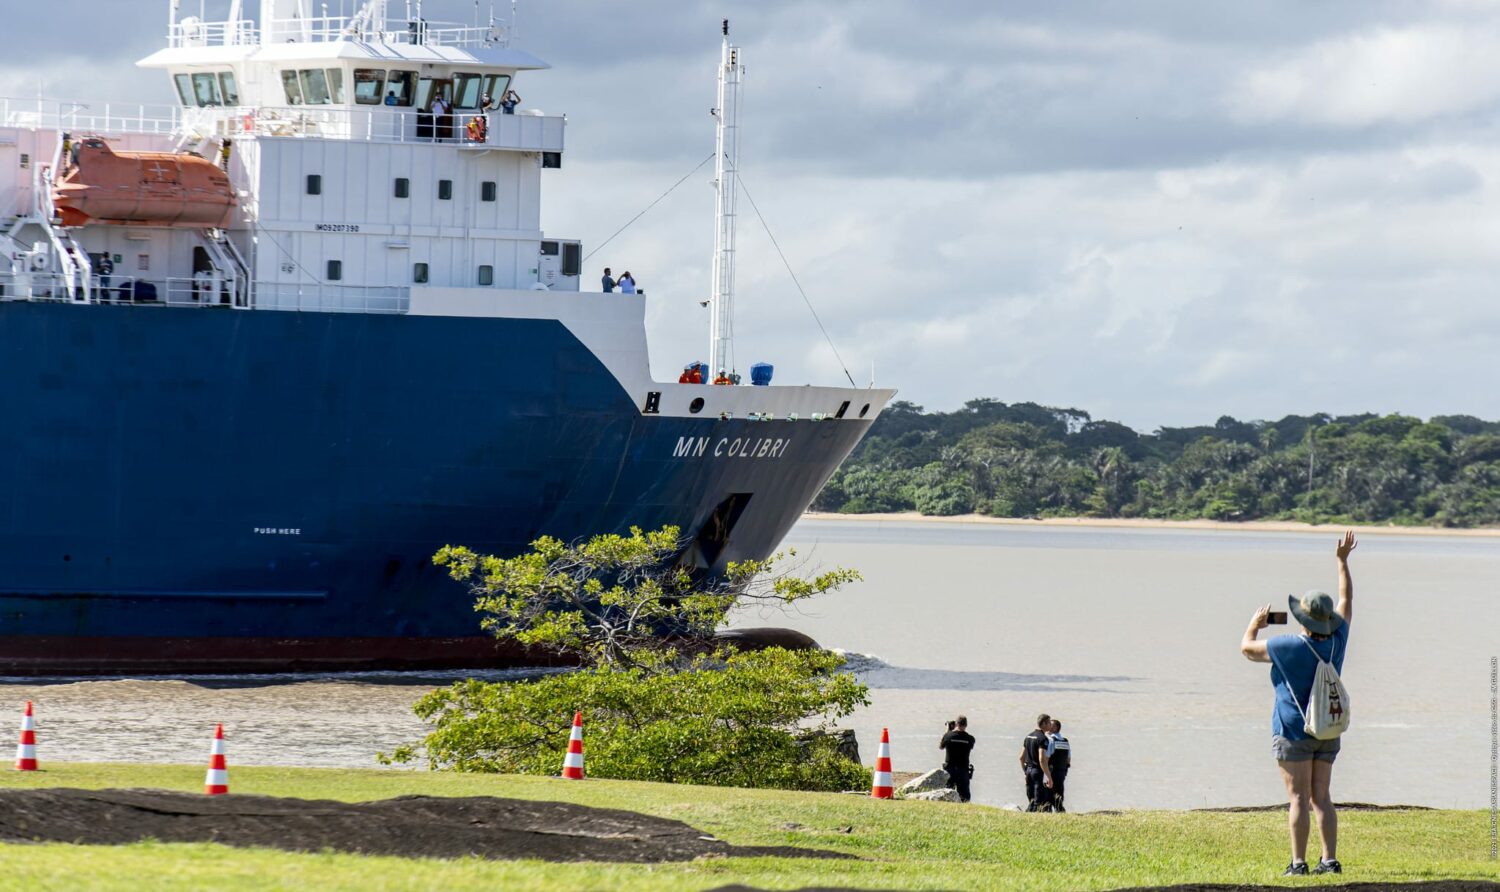 Porto com um navio azul e branco no mar, com pessoas na costa olhando e fotografando, na Guiana Francesa. Há também um gramado com uma árvore na costa do mar e montanhas ao fundo.